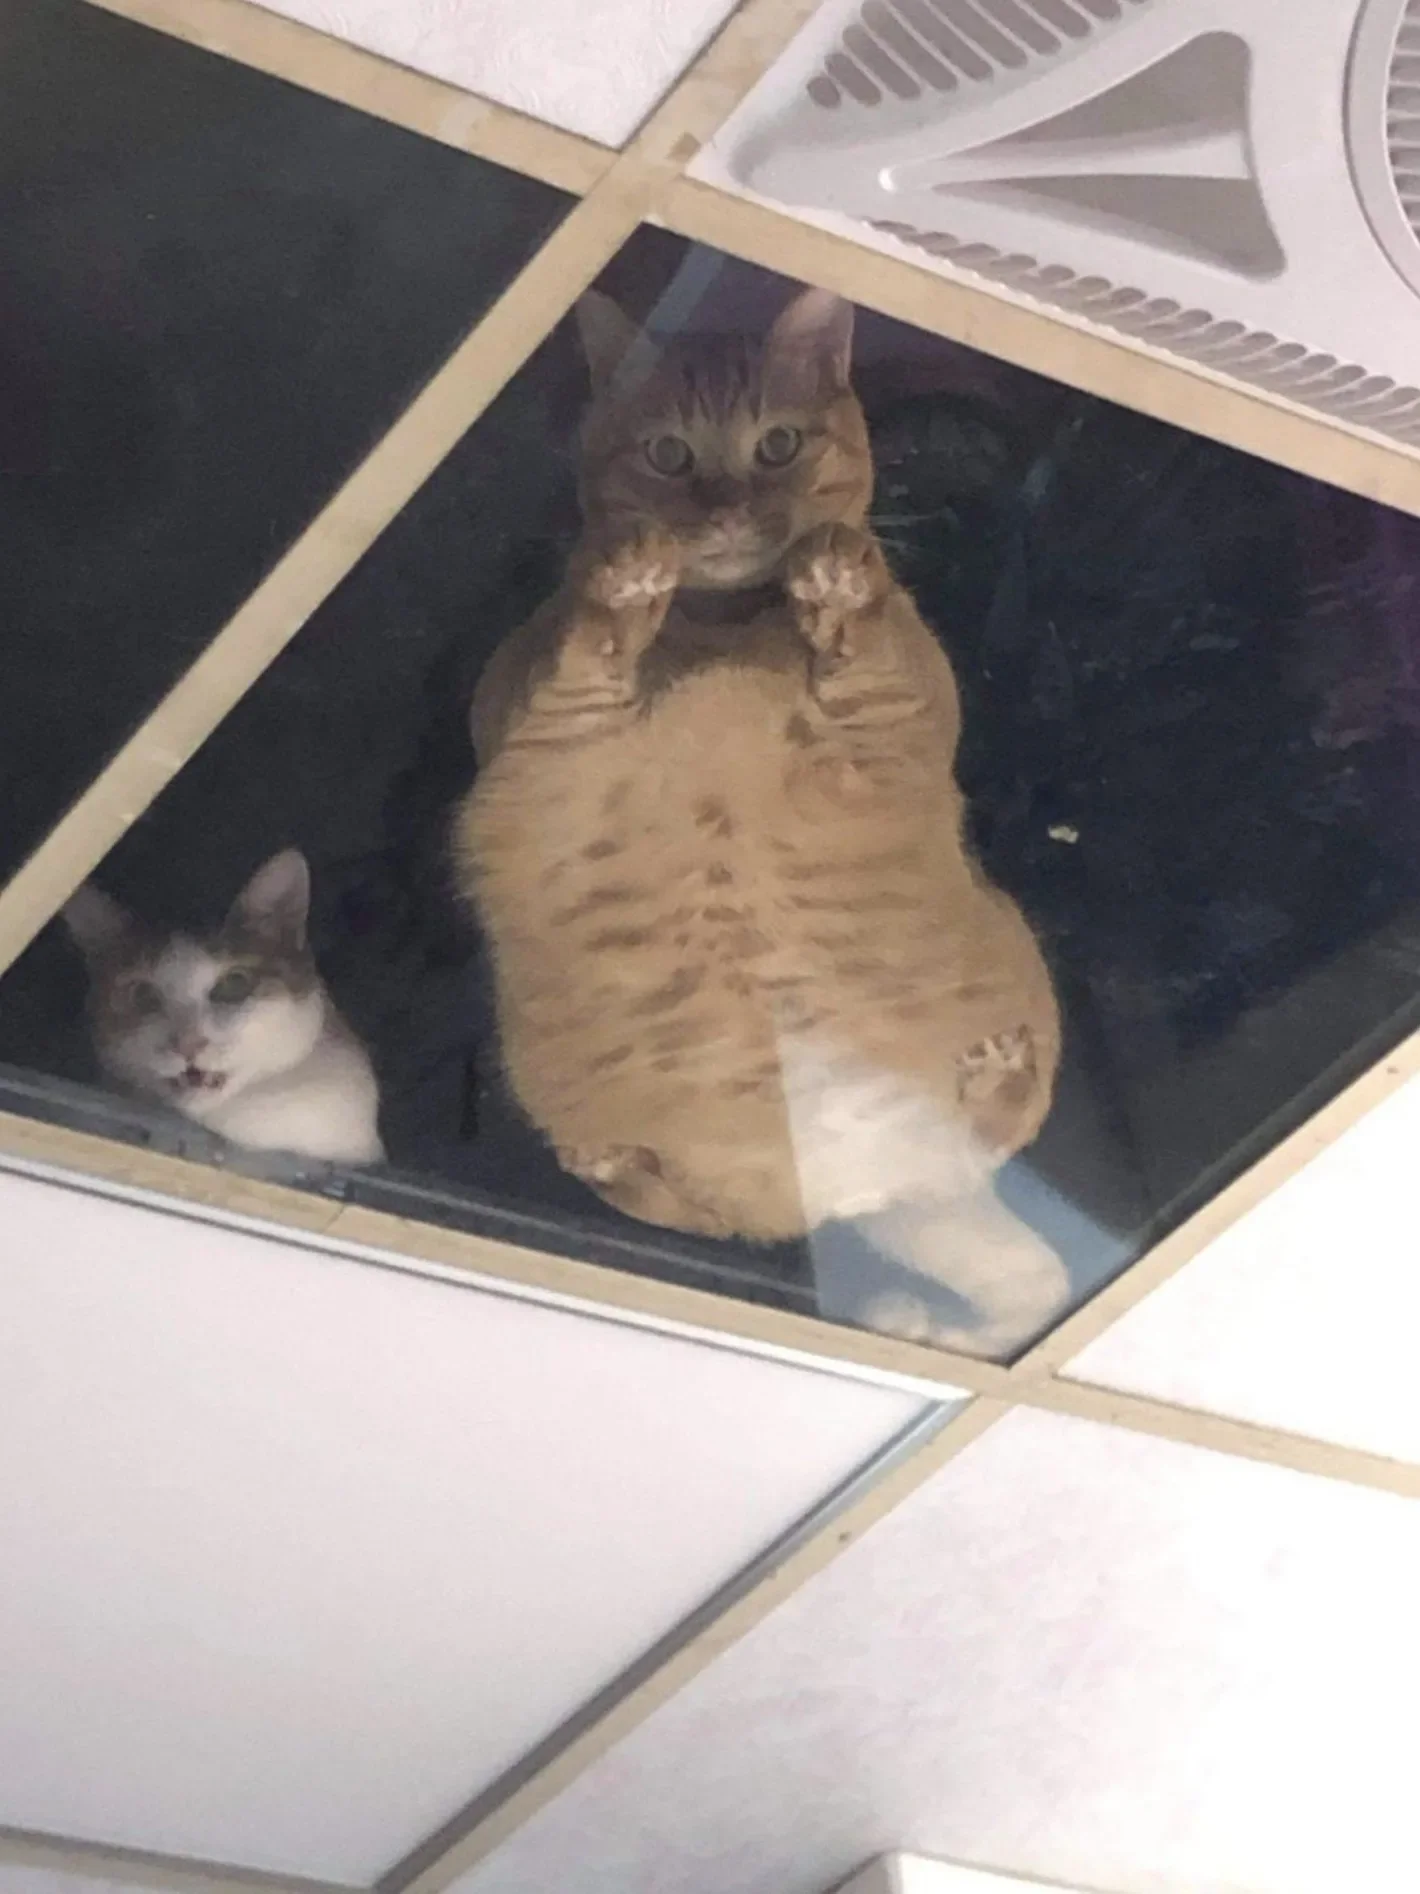 ร้านขายของทำฝ้ากระจกบนเพดานเลี้ยงแมว